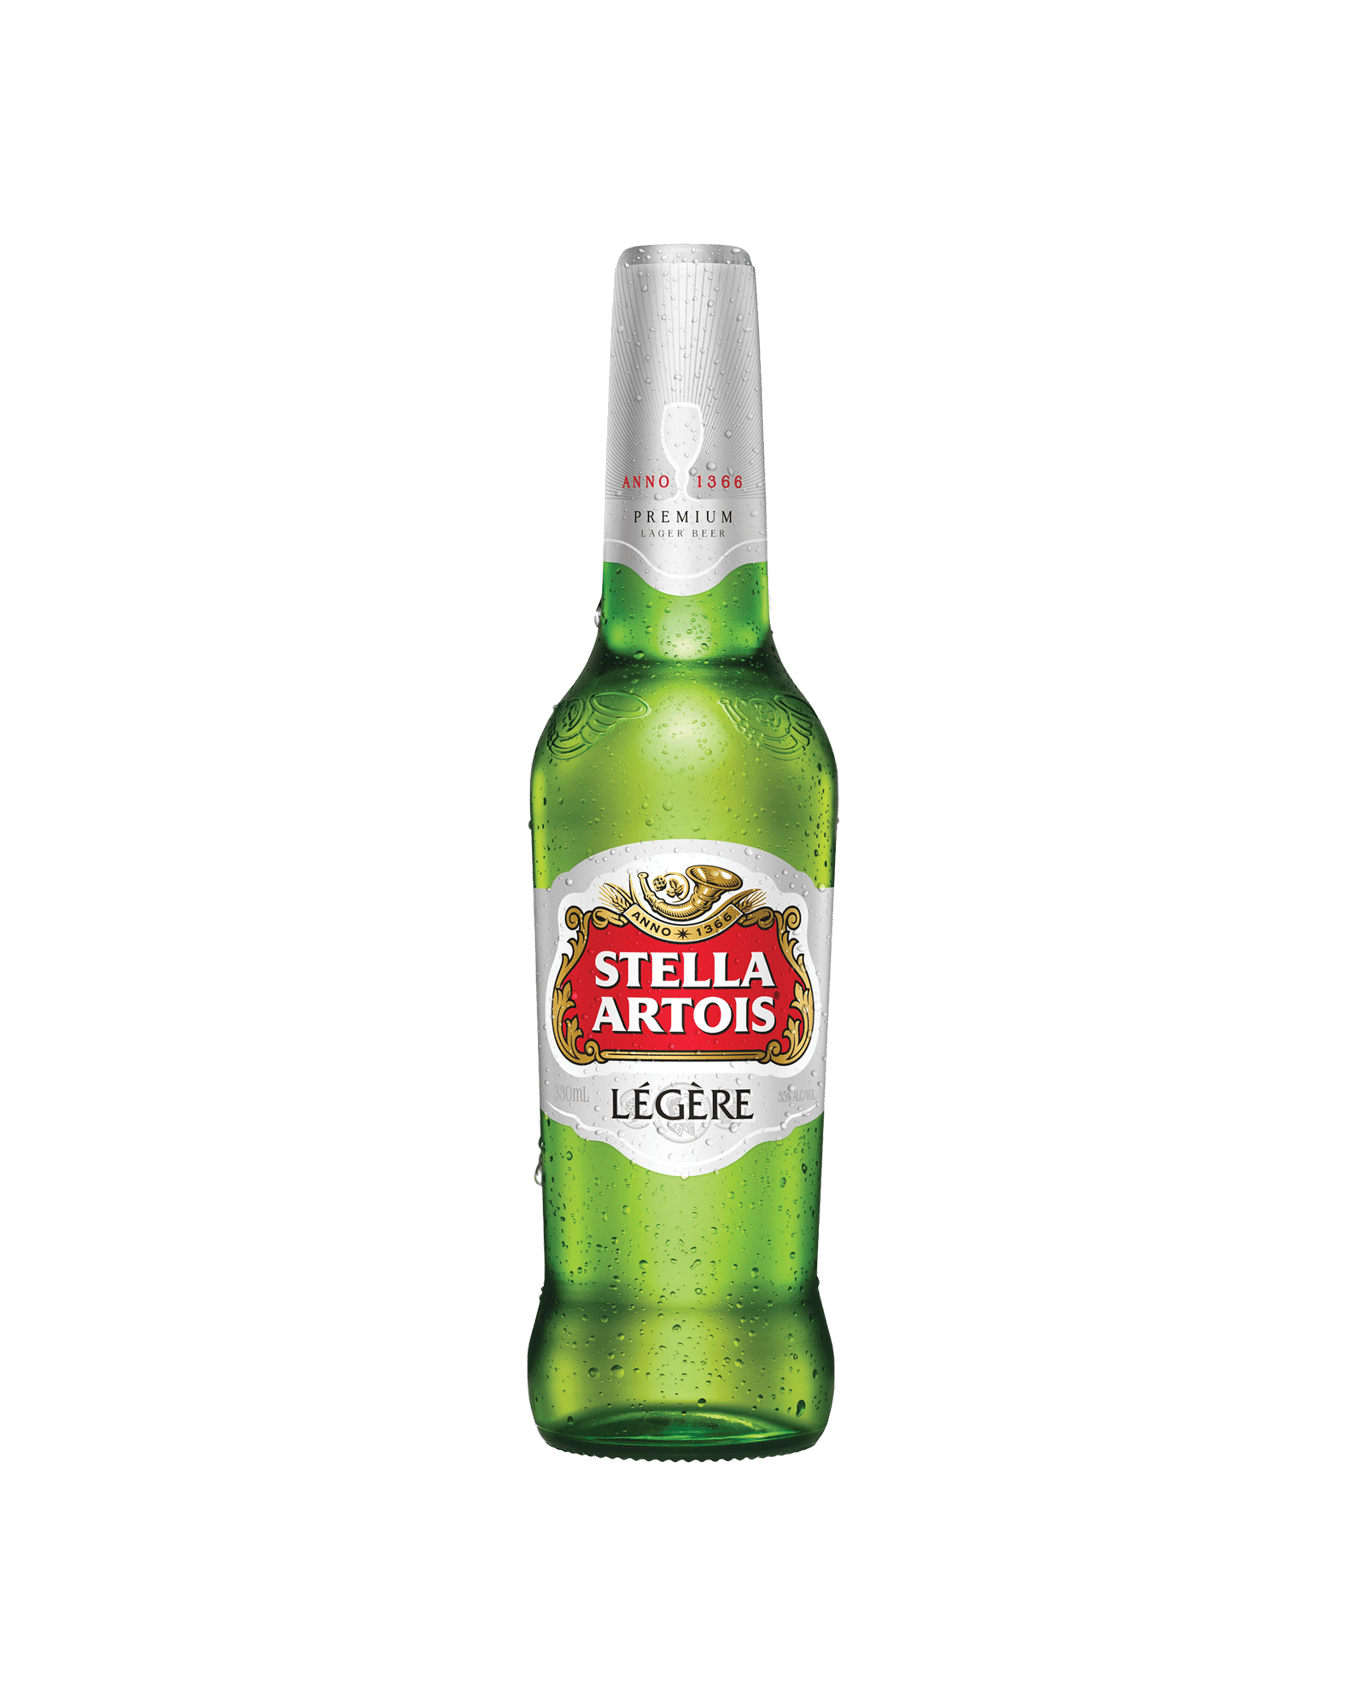 Carbs in Stella Artois Legere Beer